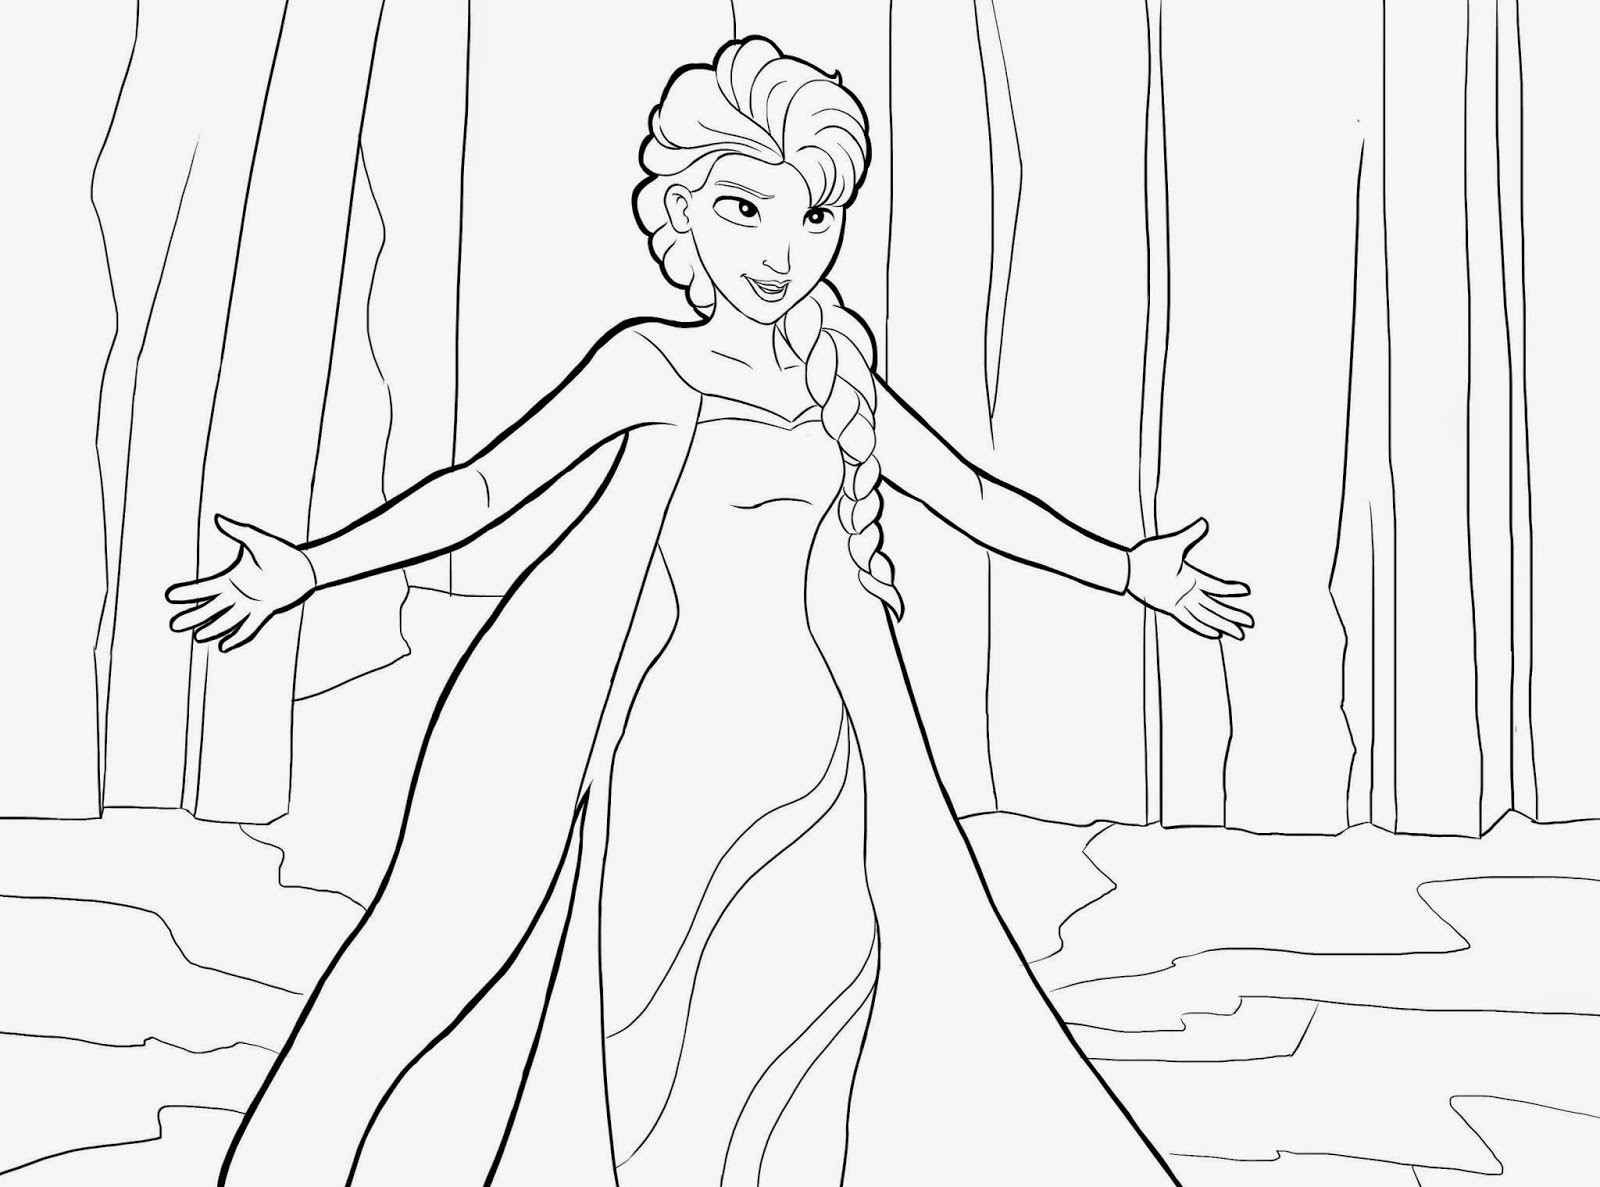 Ausmalbilder Elsa
 Ausmalbilder zum Ausdrucken Ausmalbilder Disney Frozen